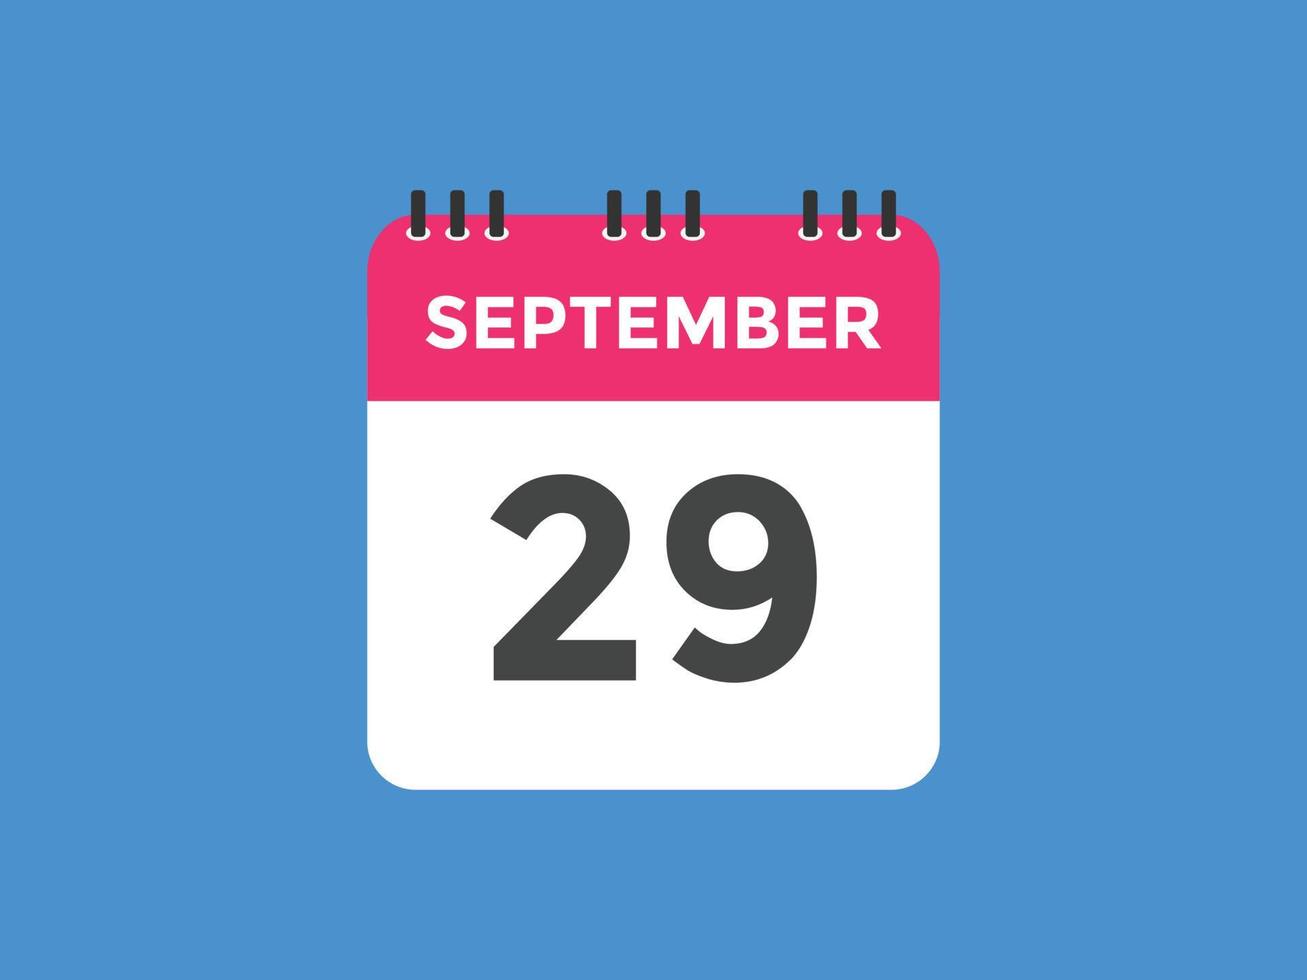 Recordatorio del calendario del 29 de septiembre. Plantilla de icono de calendario diario del 29 de septiembre. plantilla de diseño de icono de calendario 29 de septiembre. ilustración vectorial vector